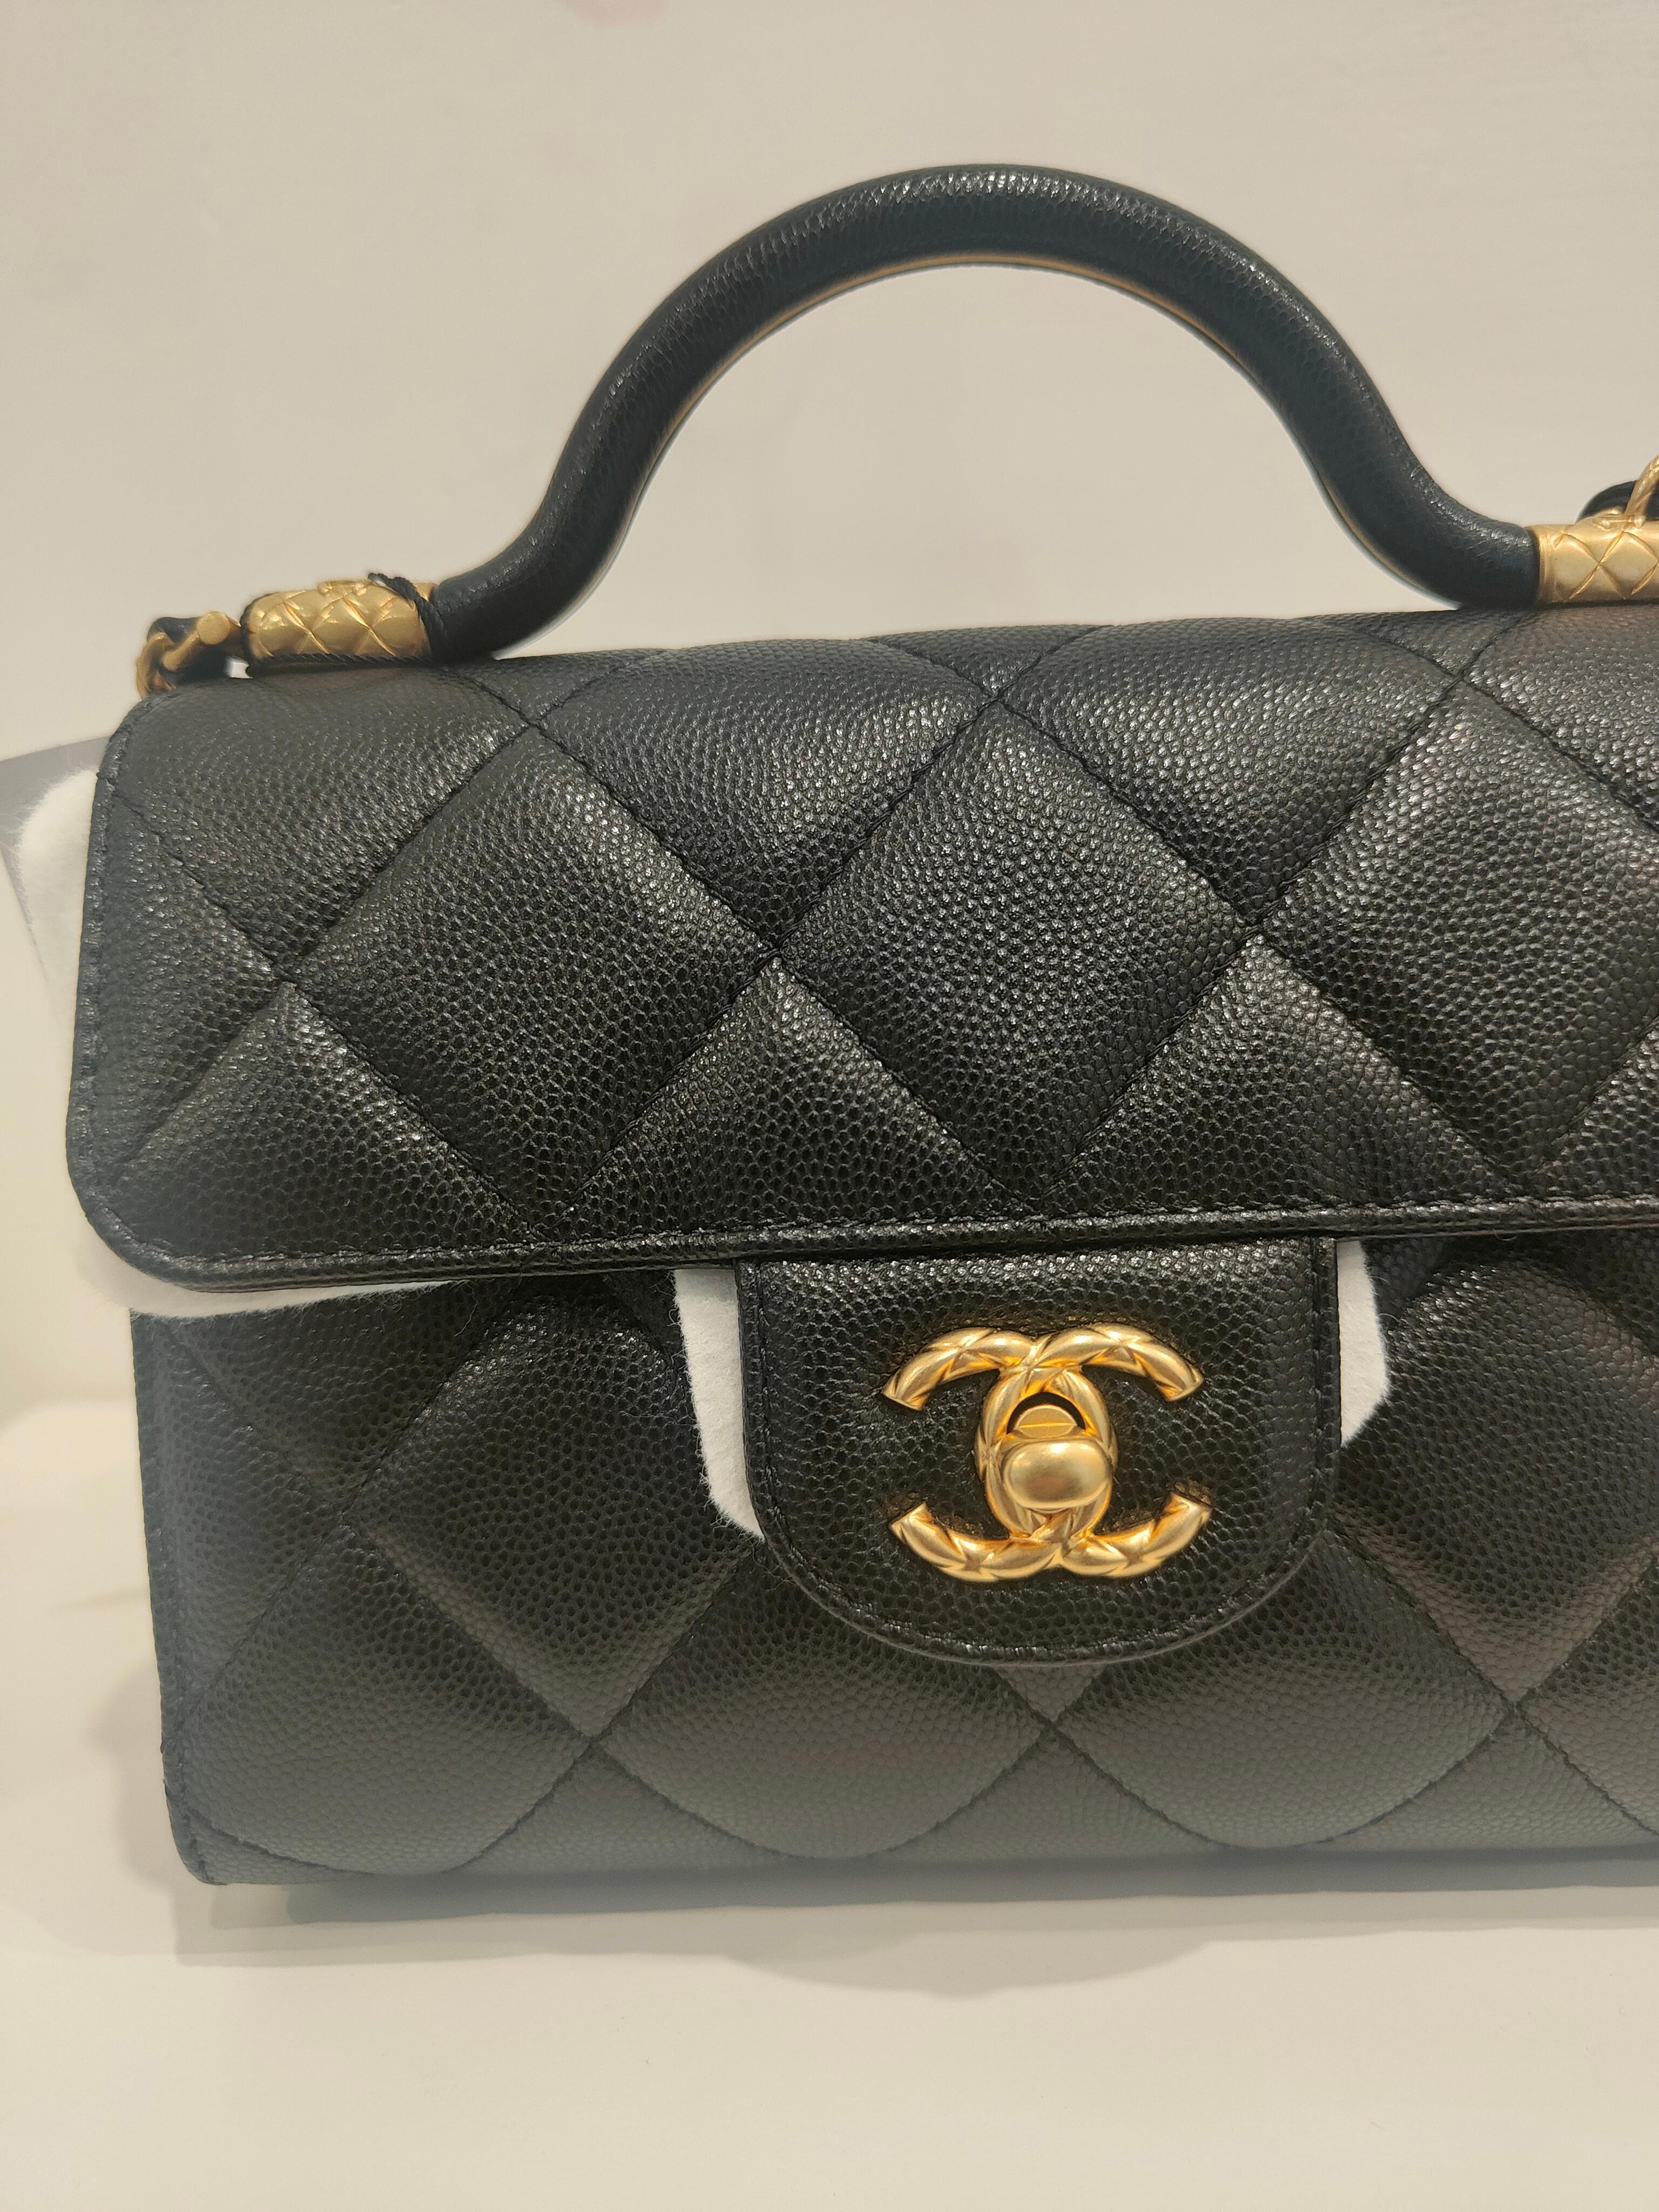 Chanel black caviar leather Gold hardware shoulder bag NWOT 7